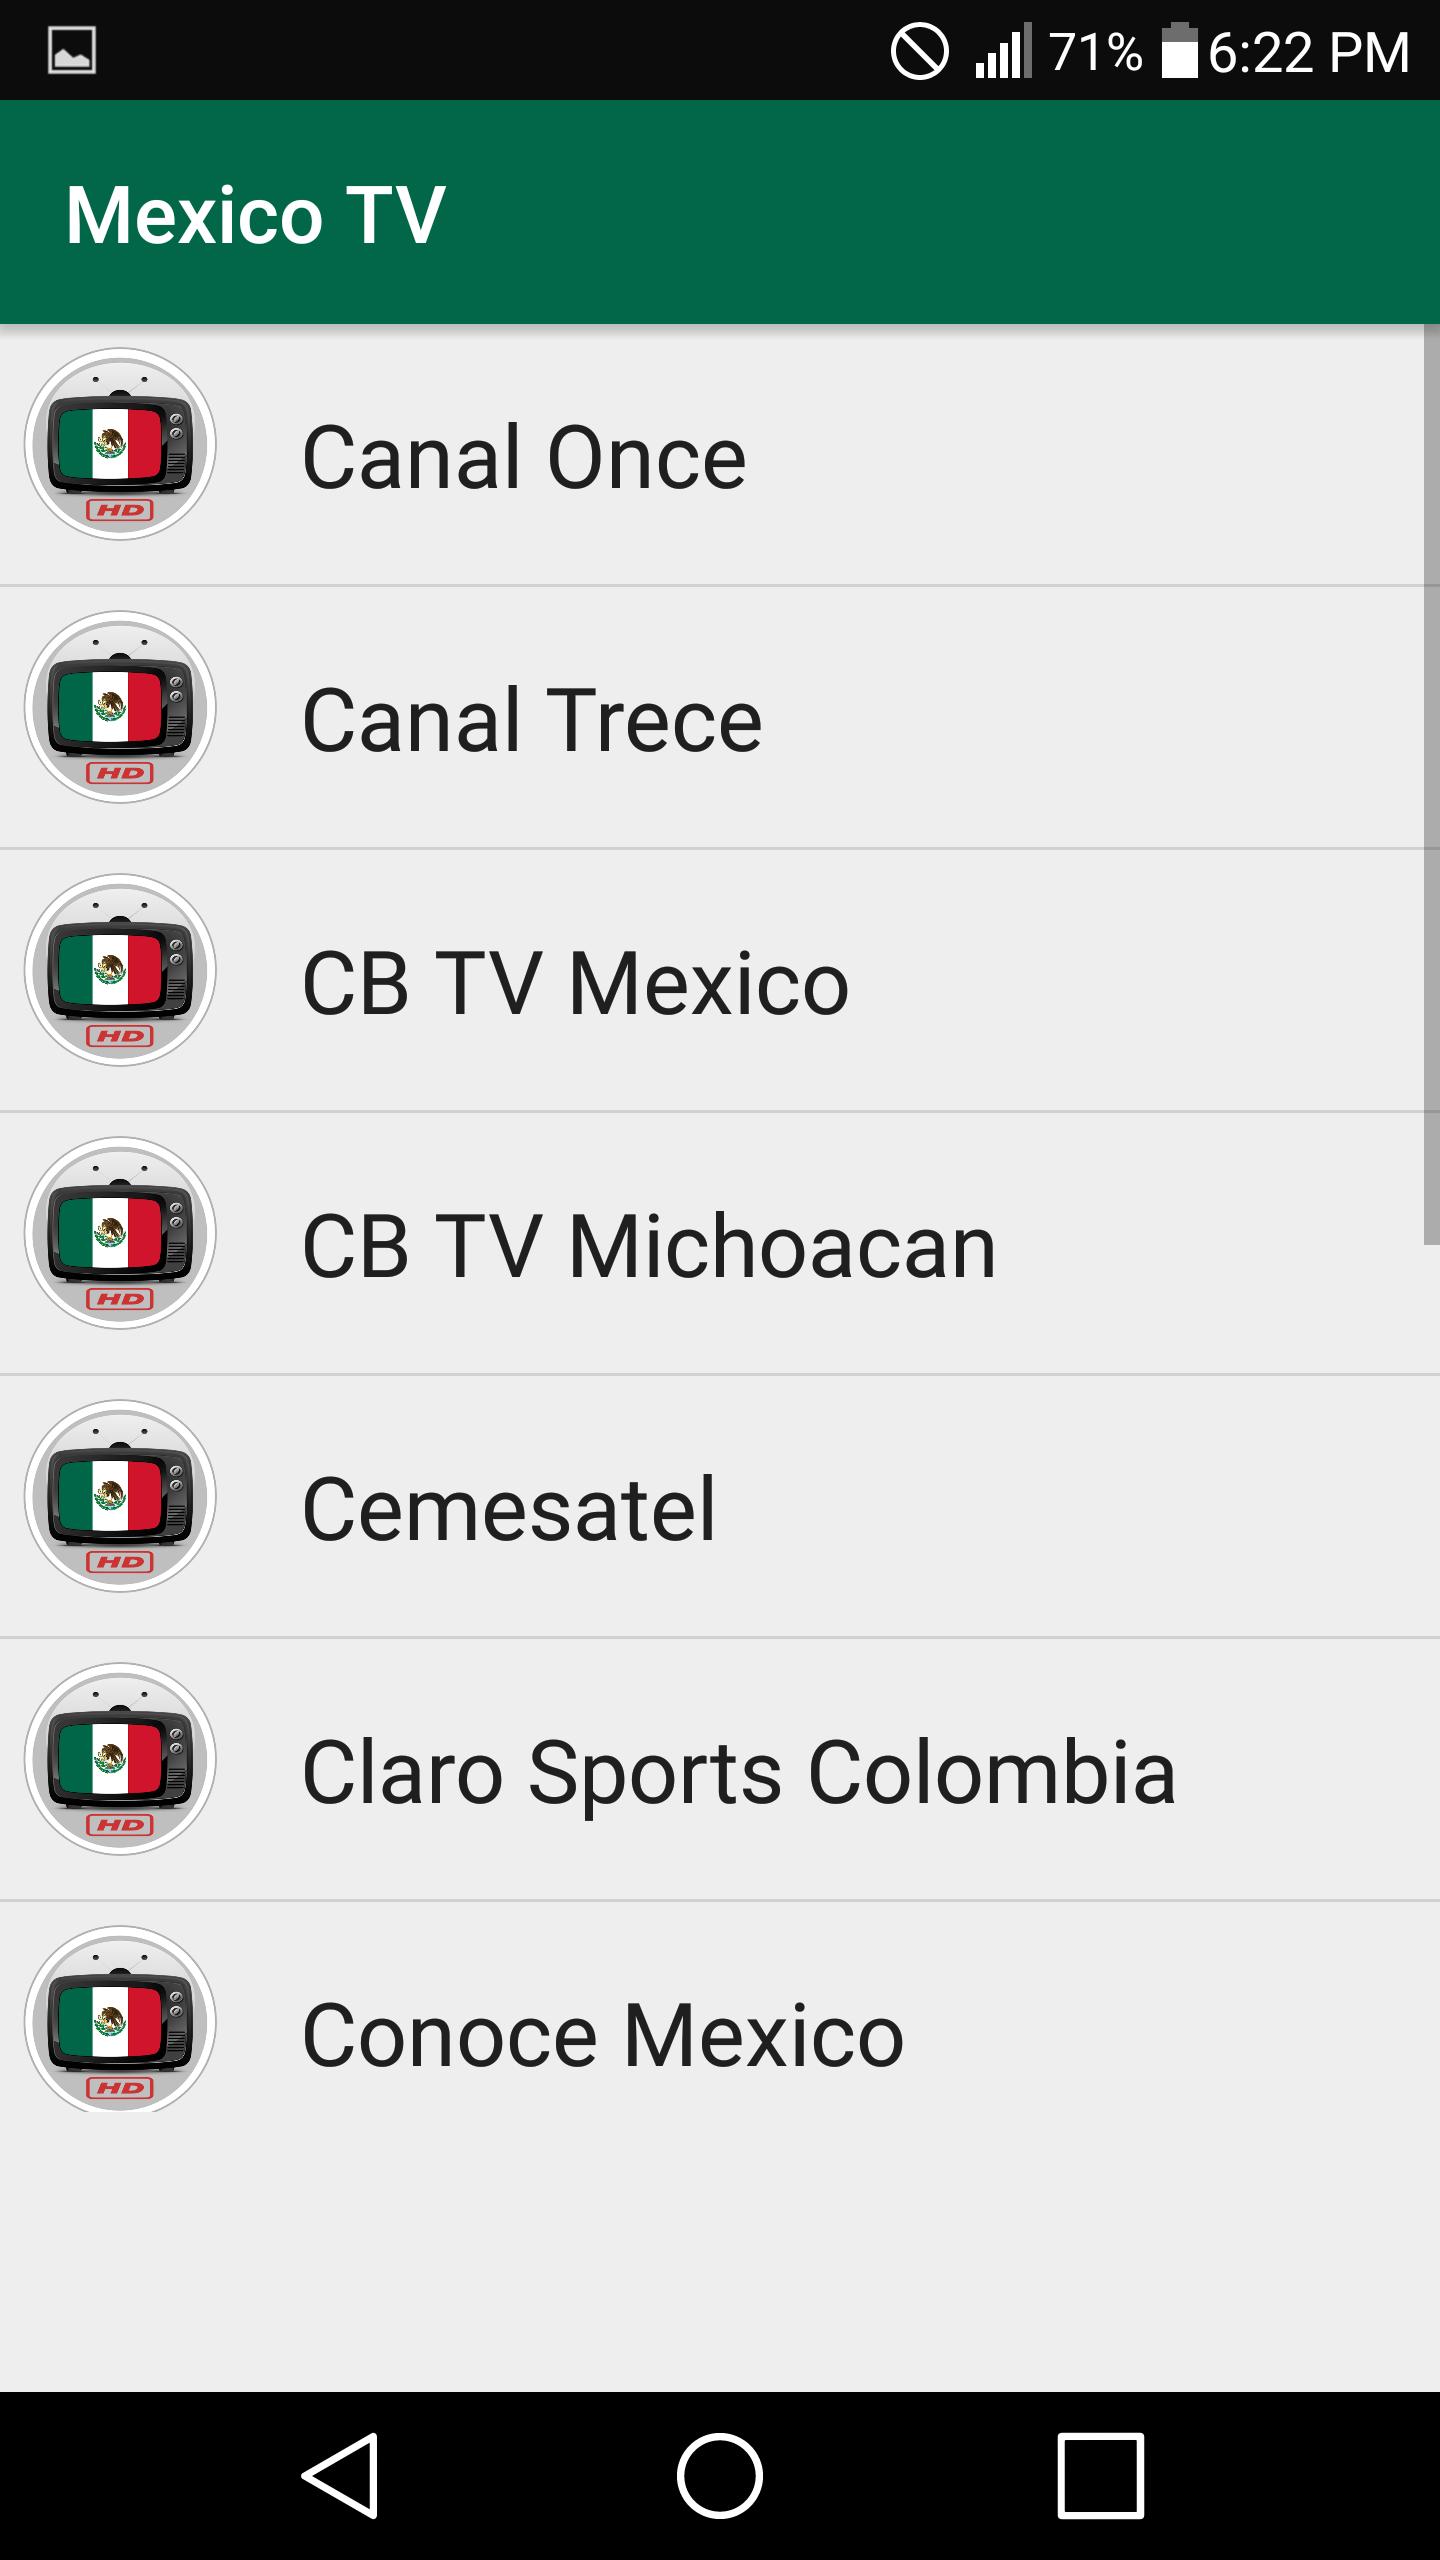 Mx region. Mexico TV.